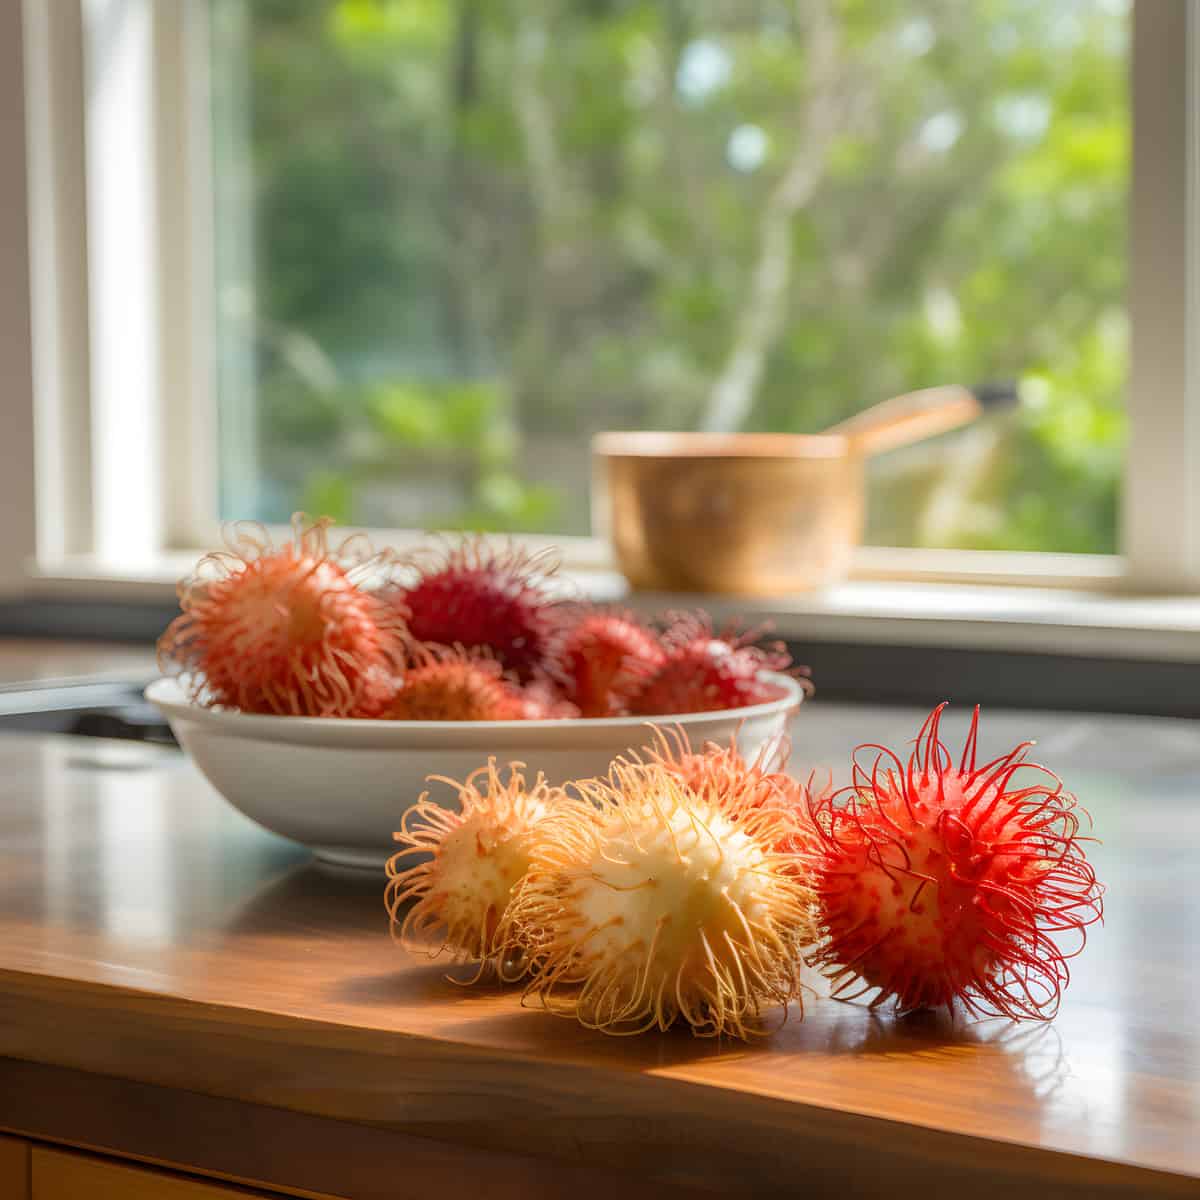 Hairless Rambutan on a kitchen counter